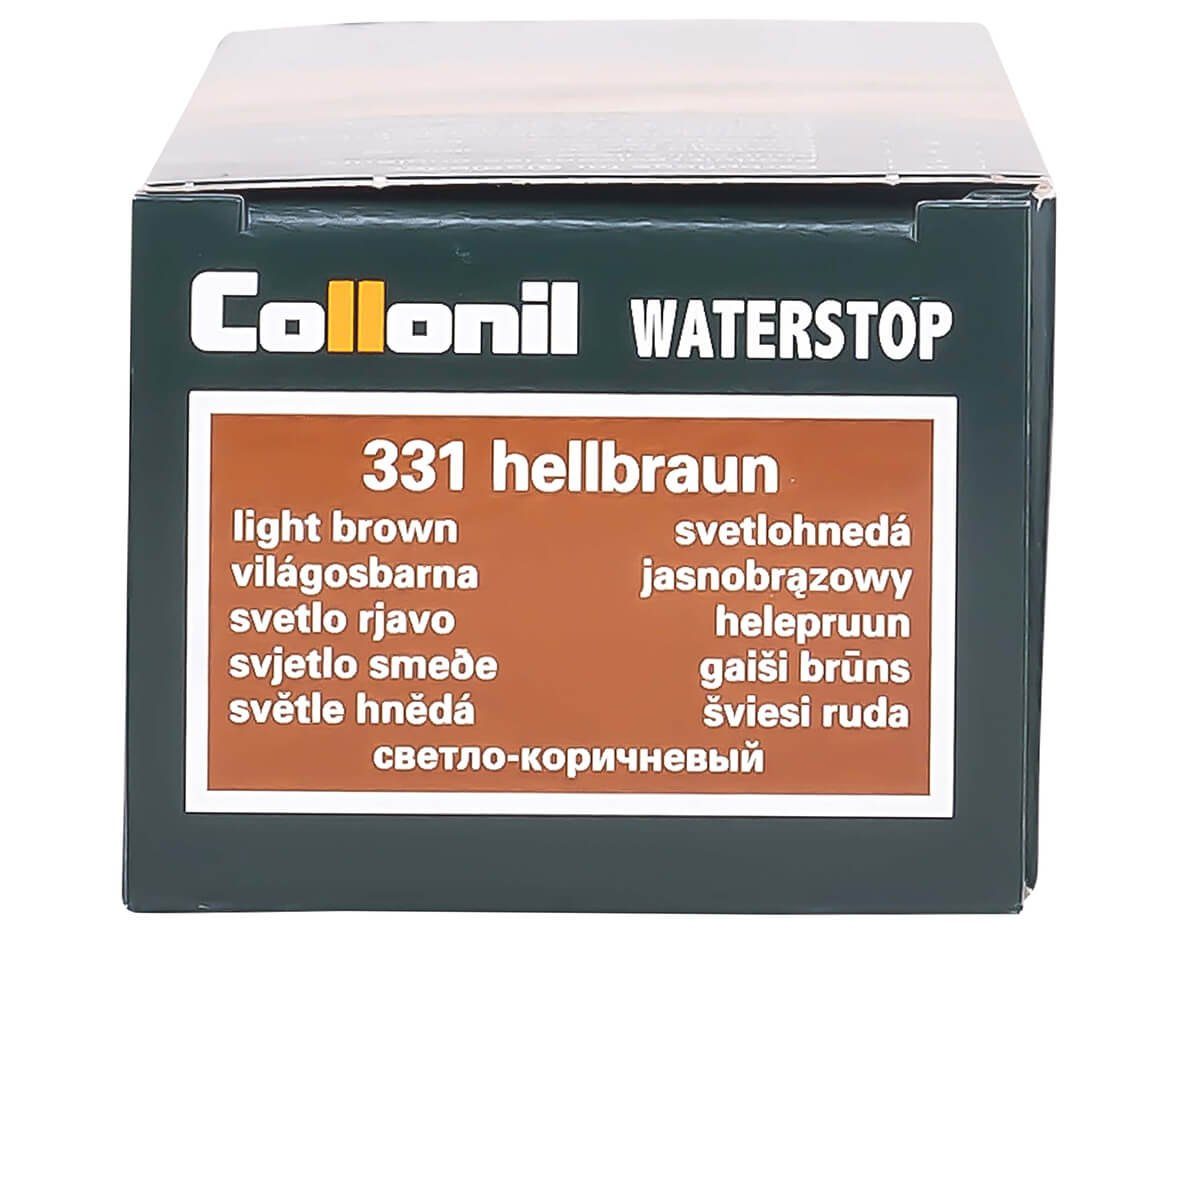 Collonil Waterstop Colours - Farbige Glattleder Schuhcreme und Pflege- Hellbraun Imprägniercreme für